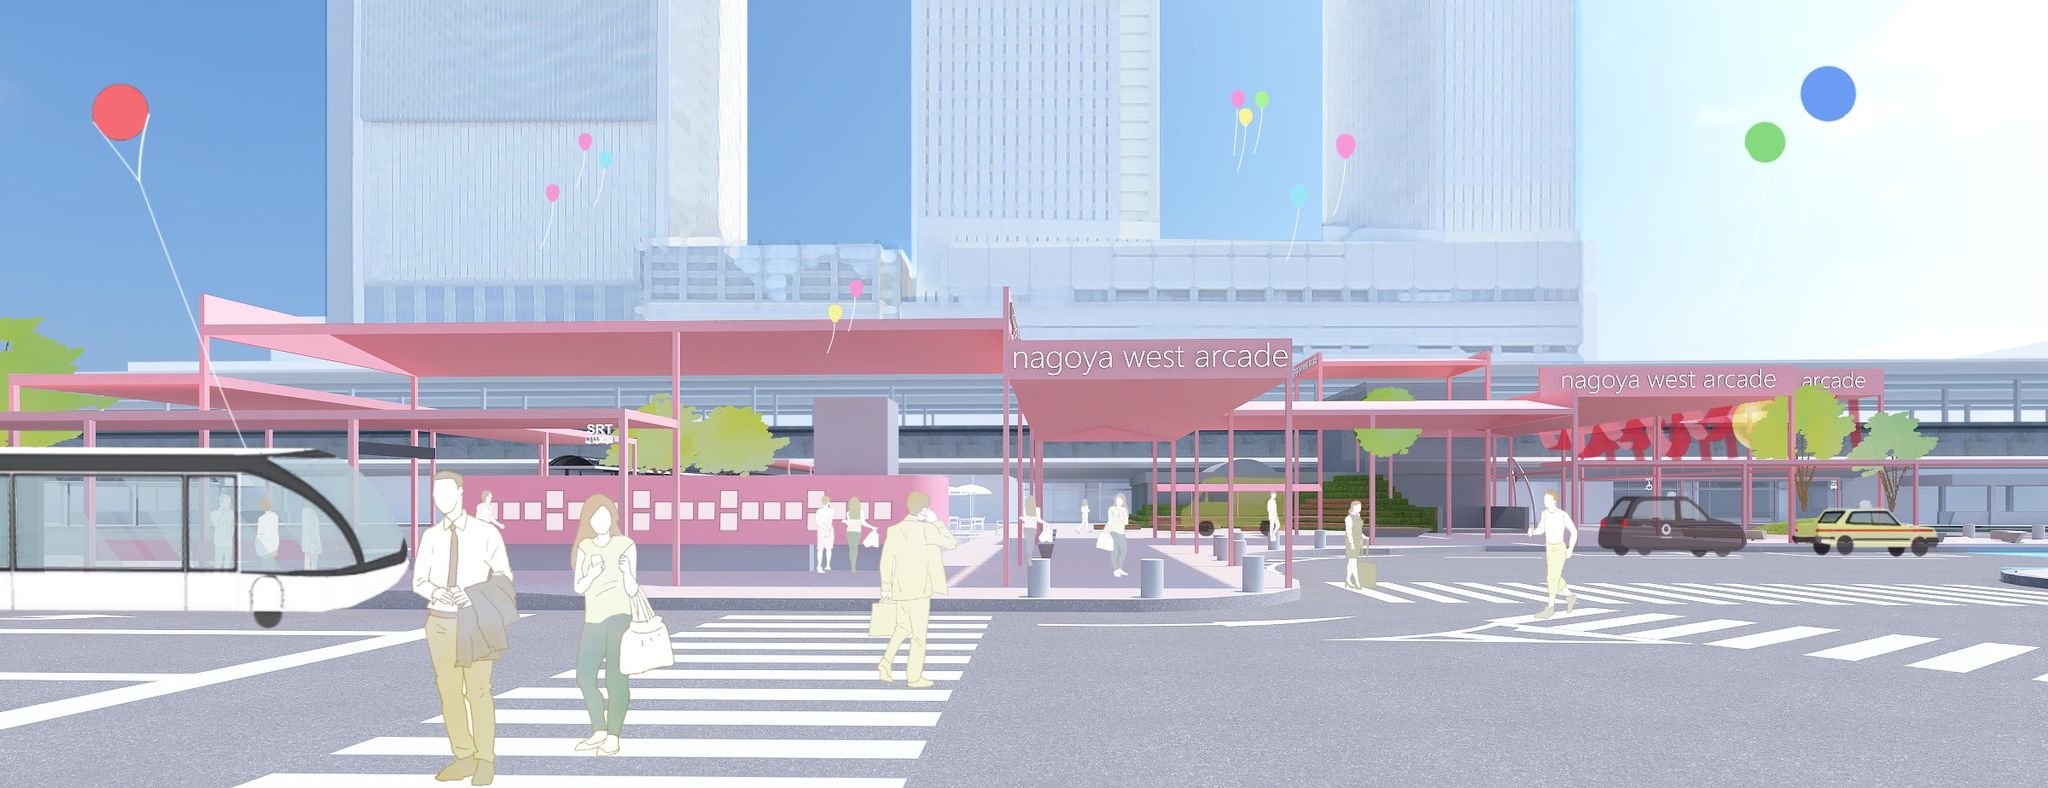 「名古屋駅西口広場」公募型プロポーザル